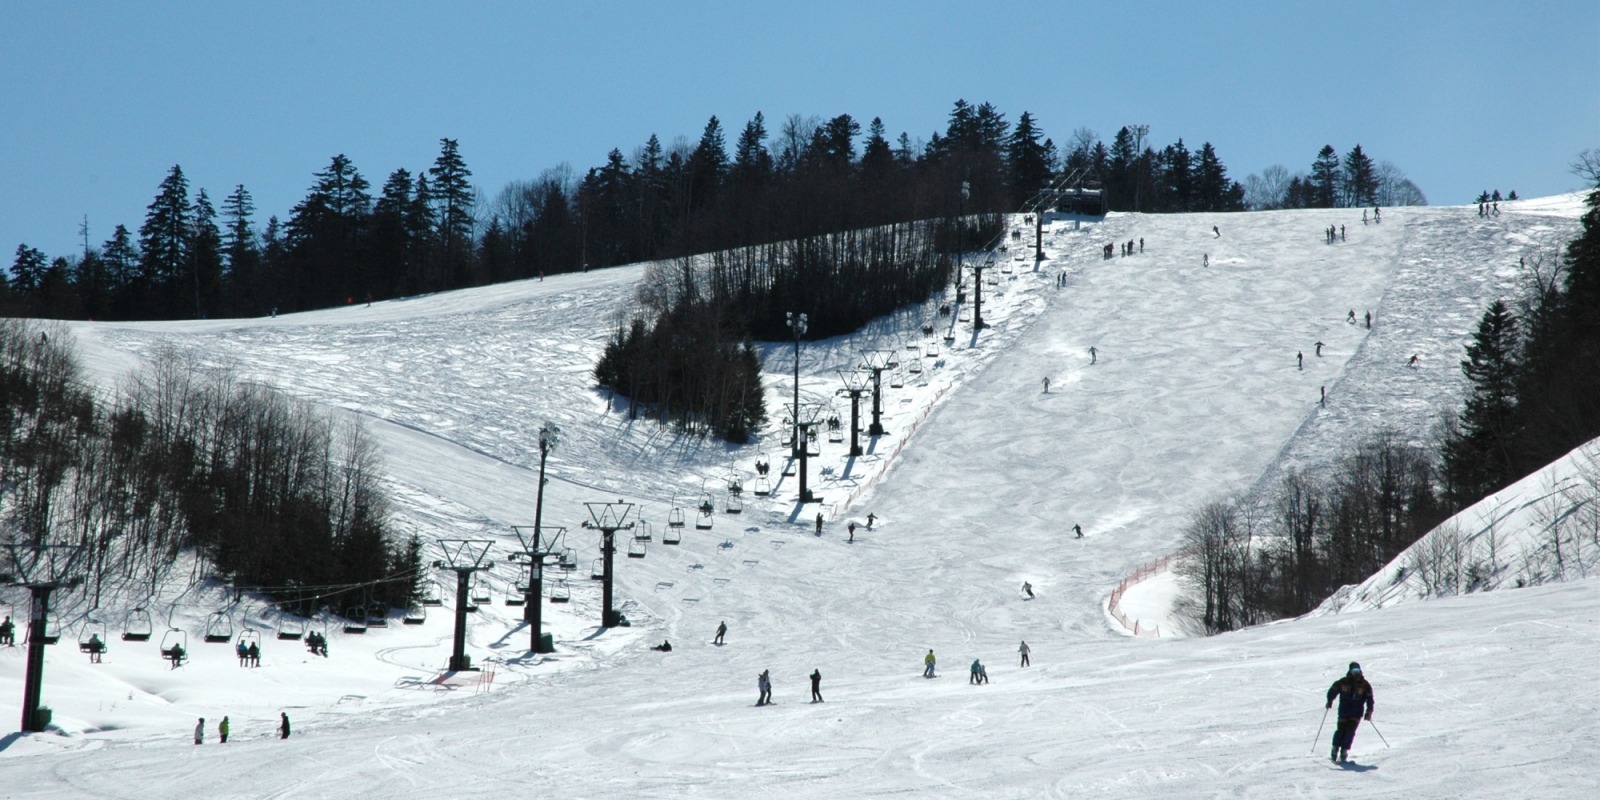 ぬかびら源泉郷スキー場の画像